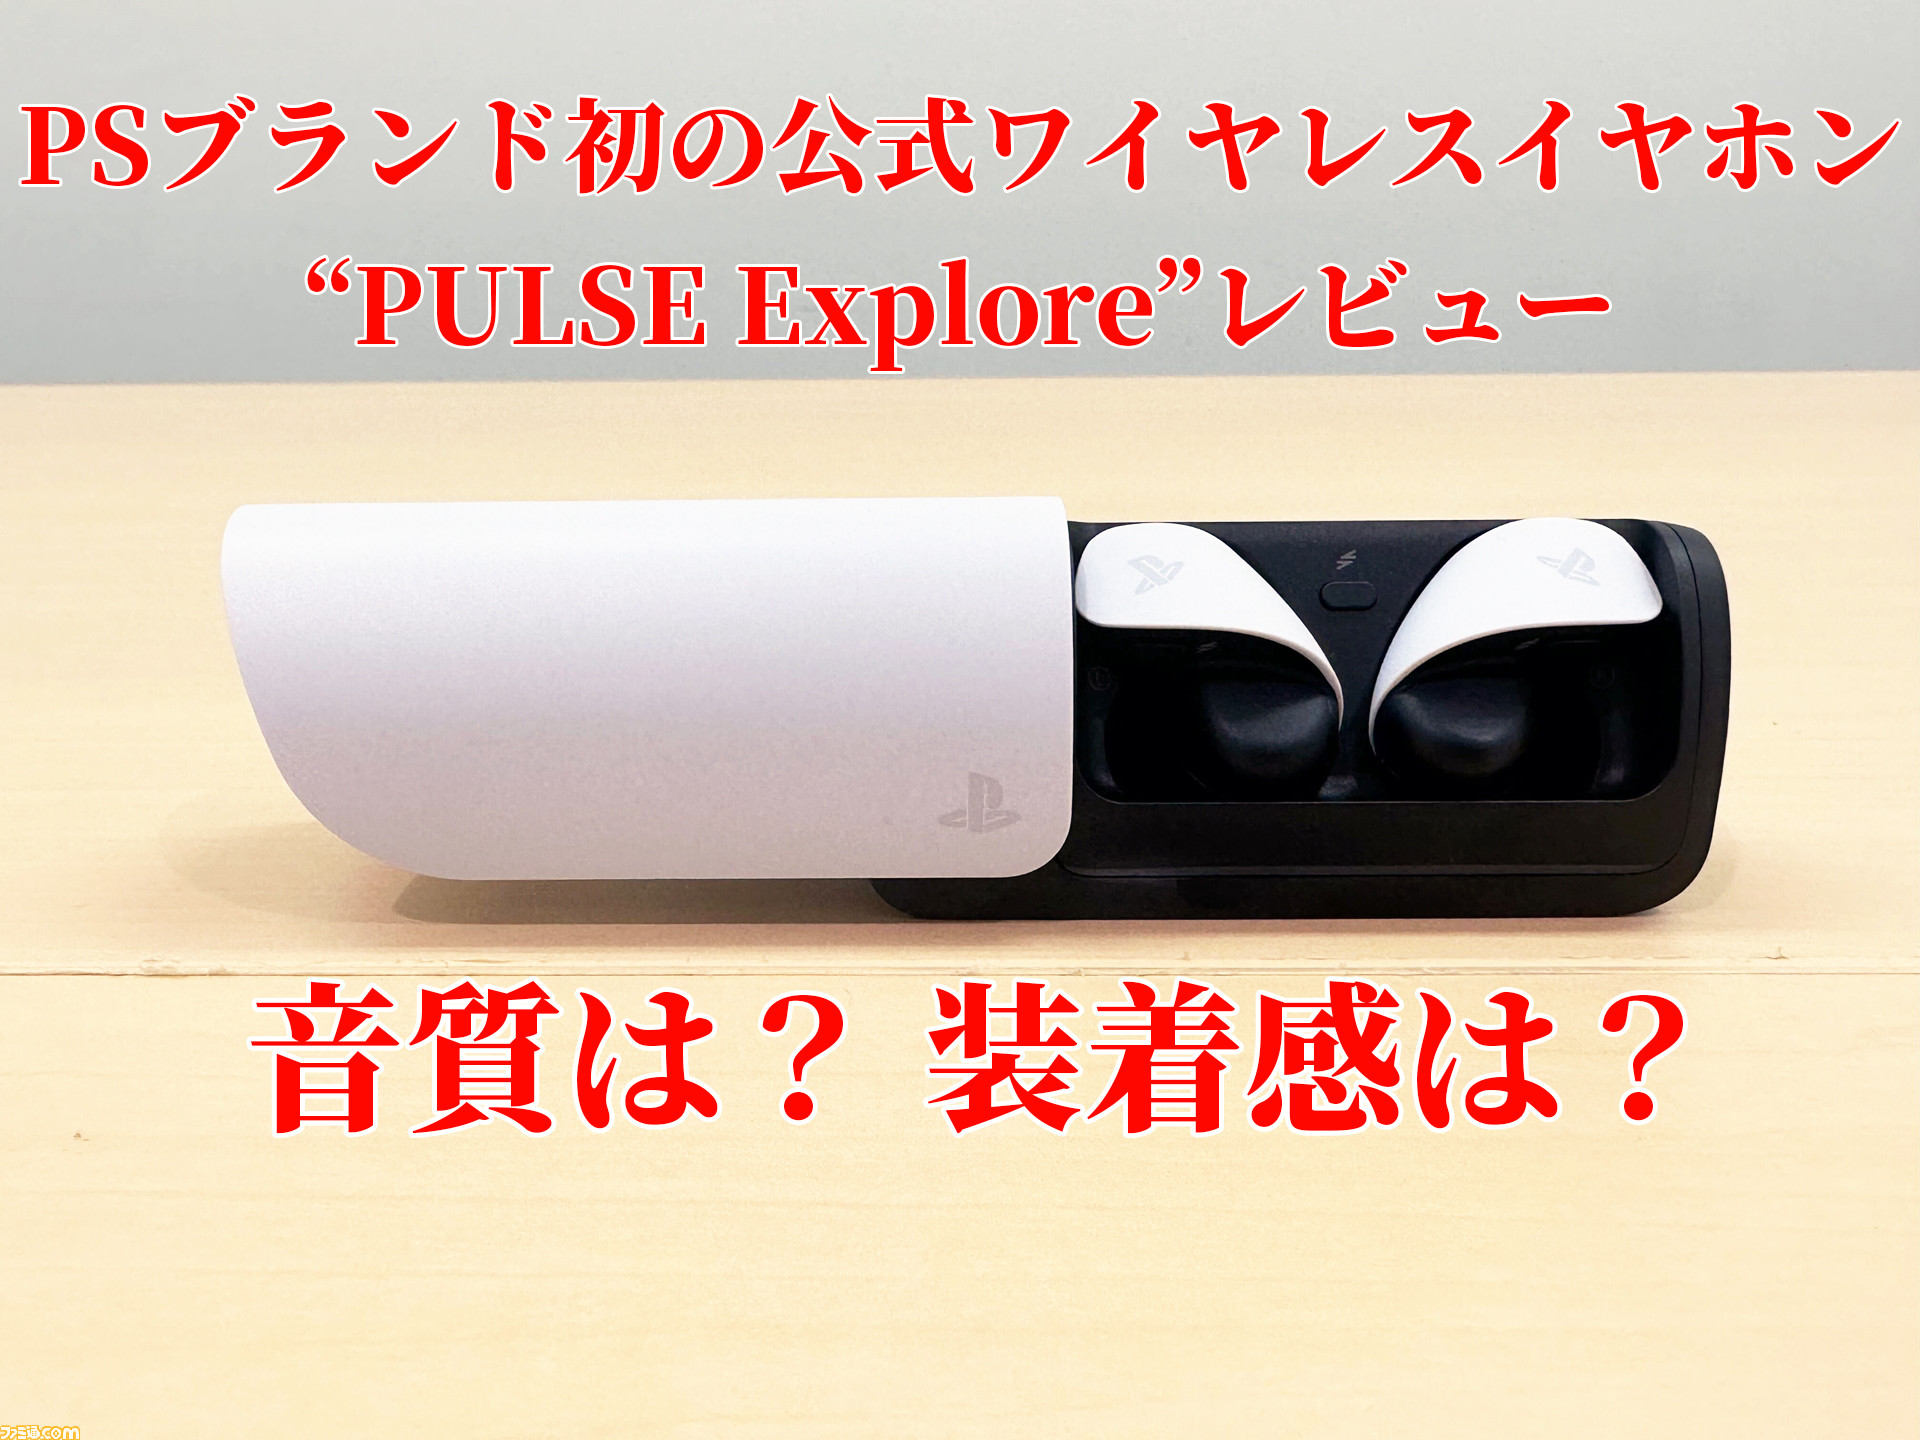 PSブランド初の公式ワイヤレスイヤホン“PULSE Explore”が本日発売 ...